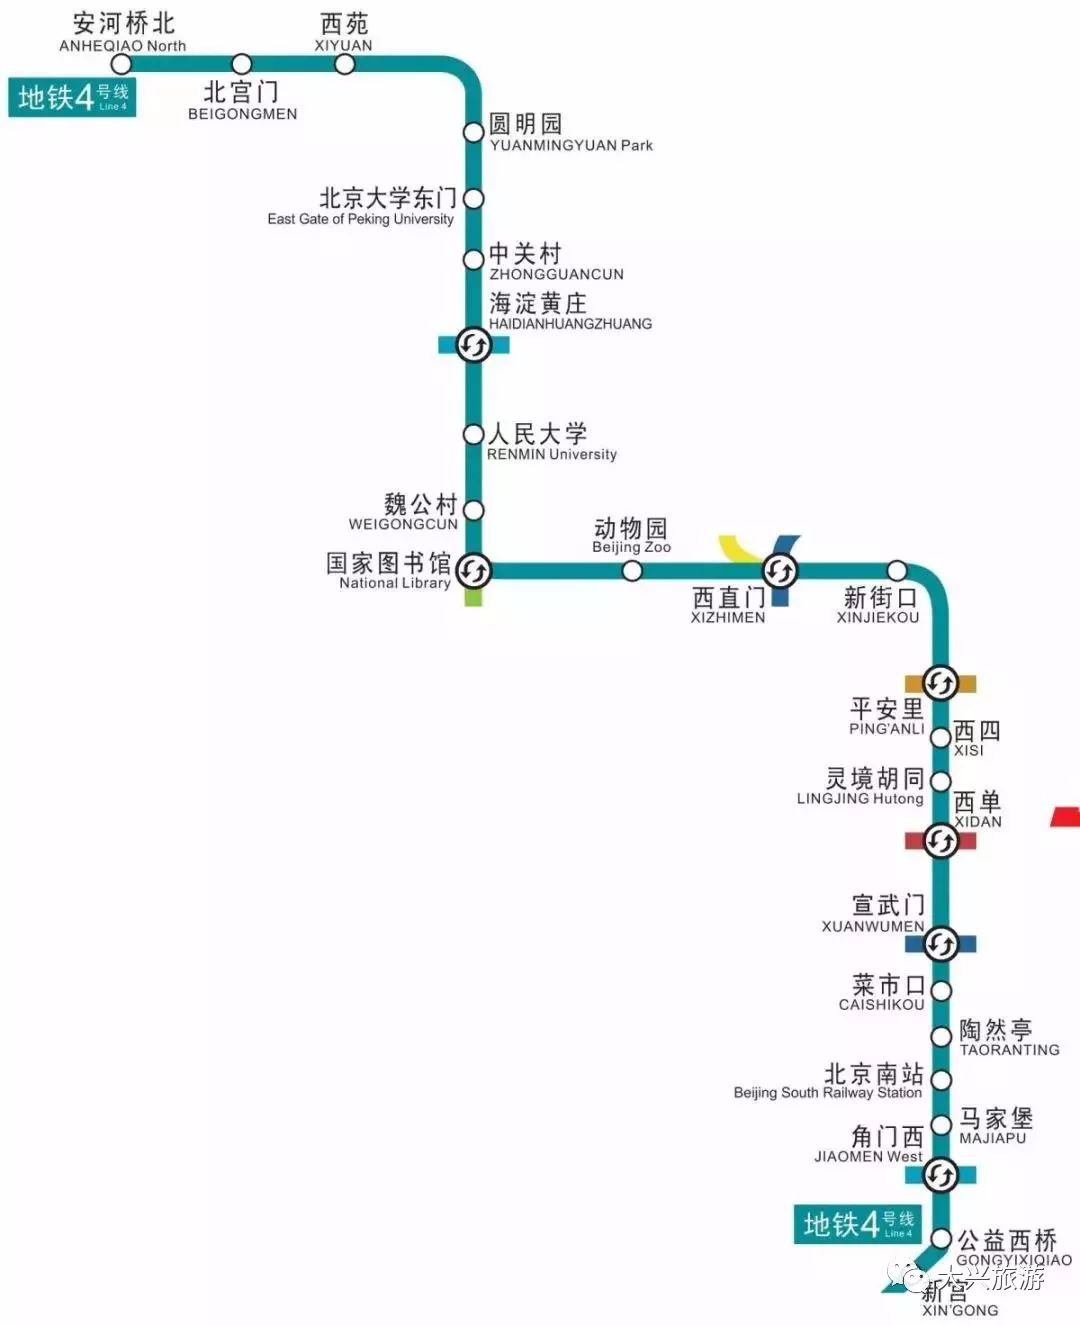 "北京地铁4号线南延至大兴区庞各庄镇" 北京地铁4号线,是北京市轨道